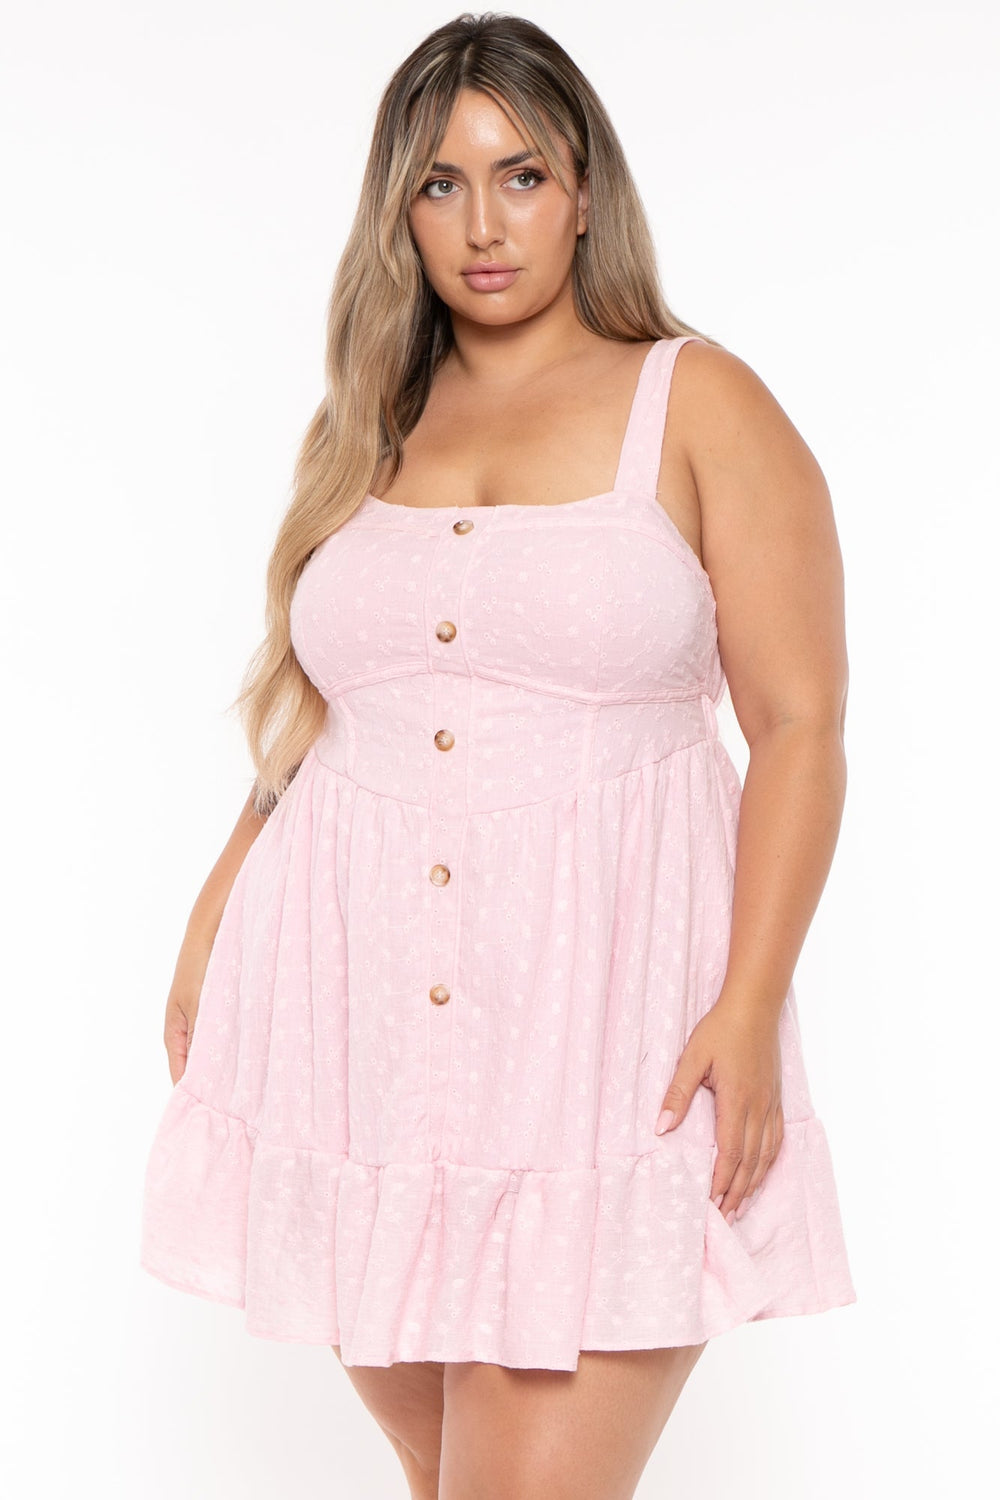 Curvy Sense Dresses Plus Size Kacey Eyelet Mini Dress - Pink